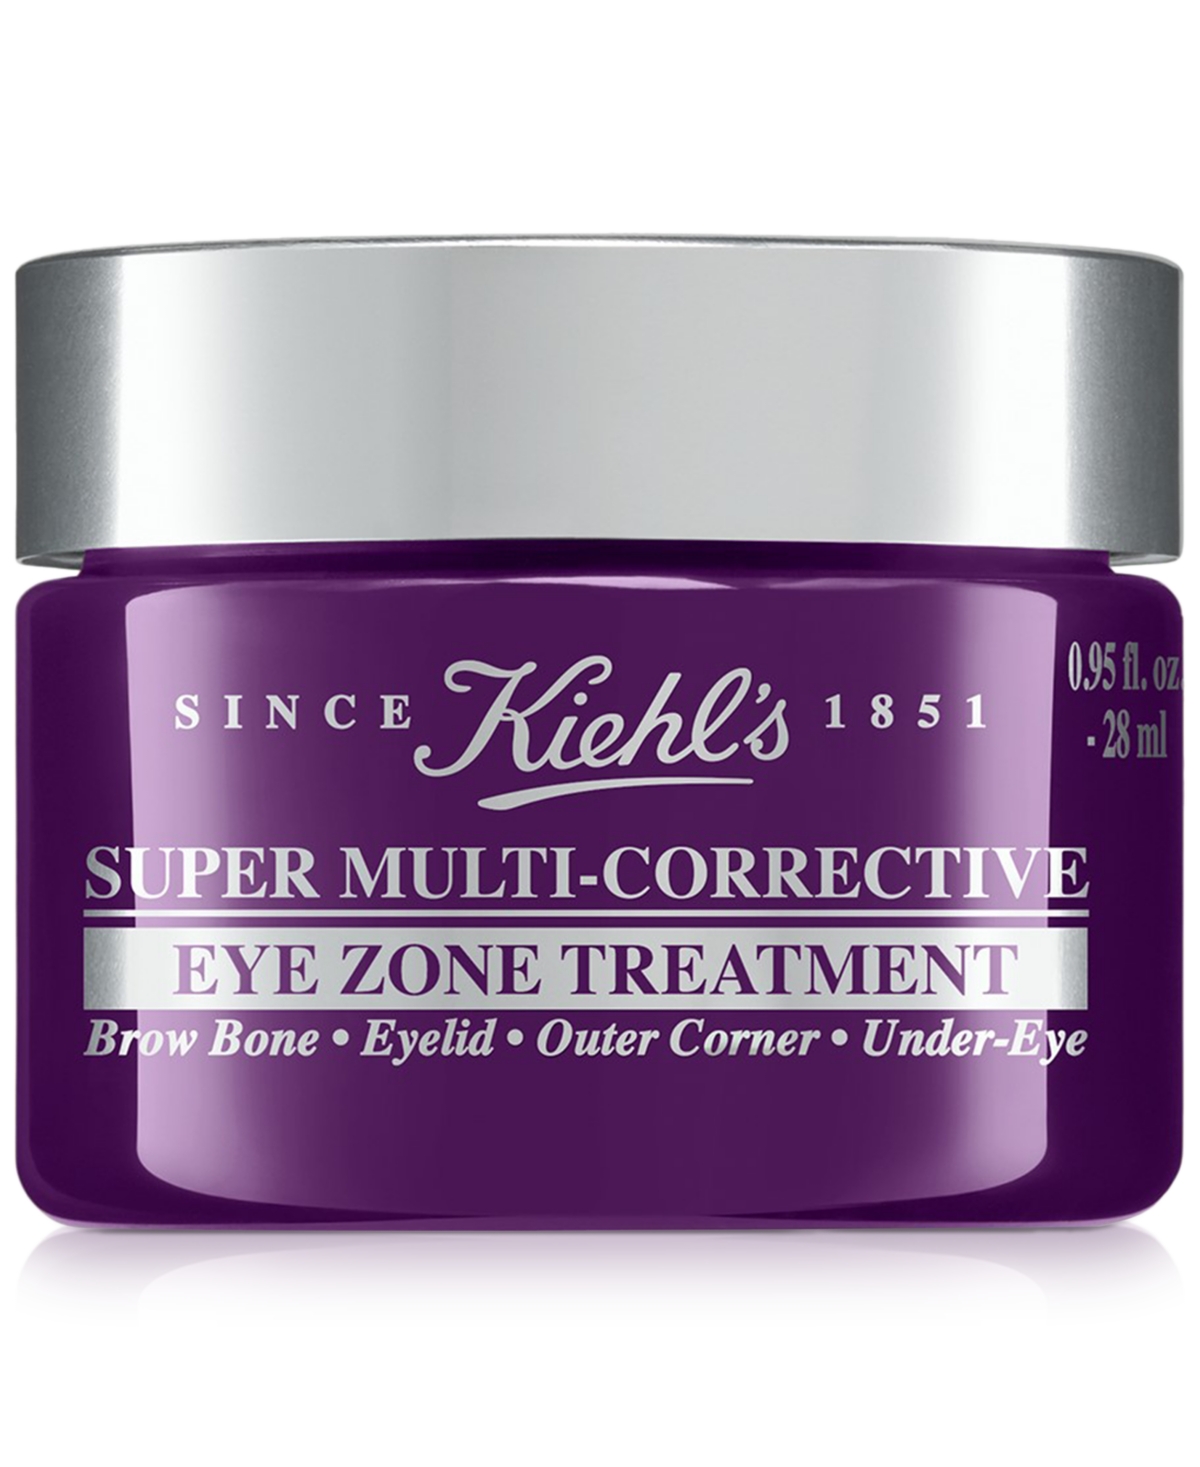 Kiehl's Since 1851 Super Multi-corrective Eye Cream, 0.95 Oz. In No Color